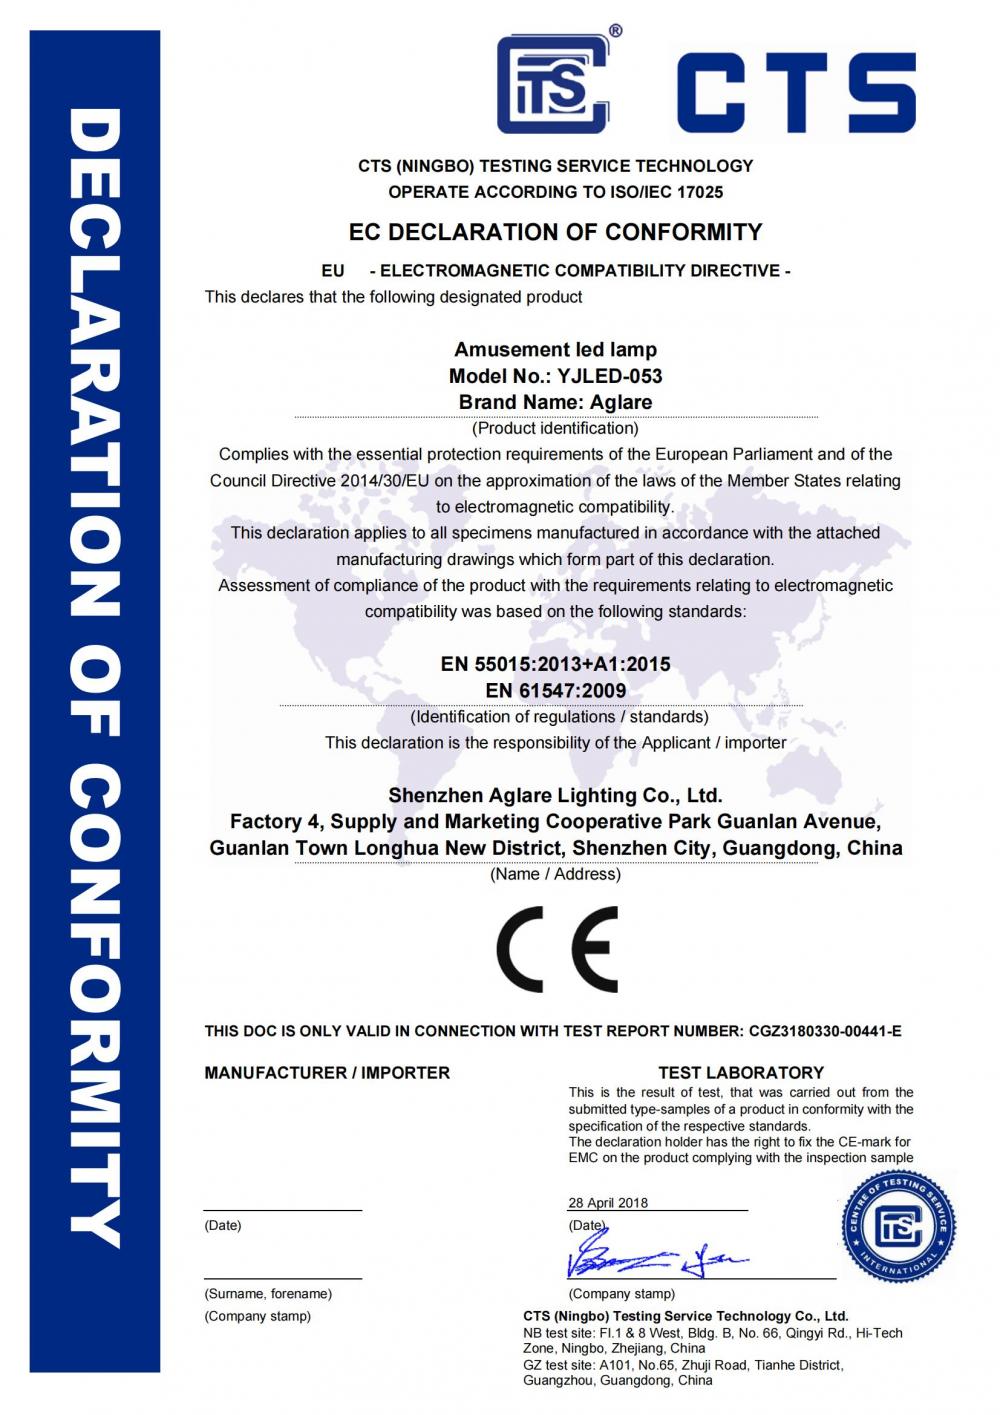 CE EMC certificate for amusement LED Lamp  Aglare Lighting